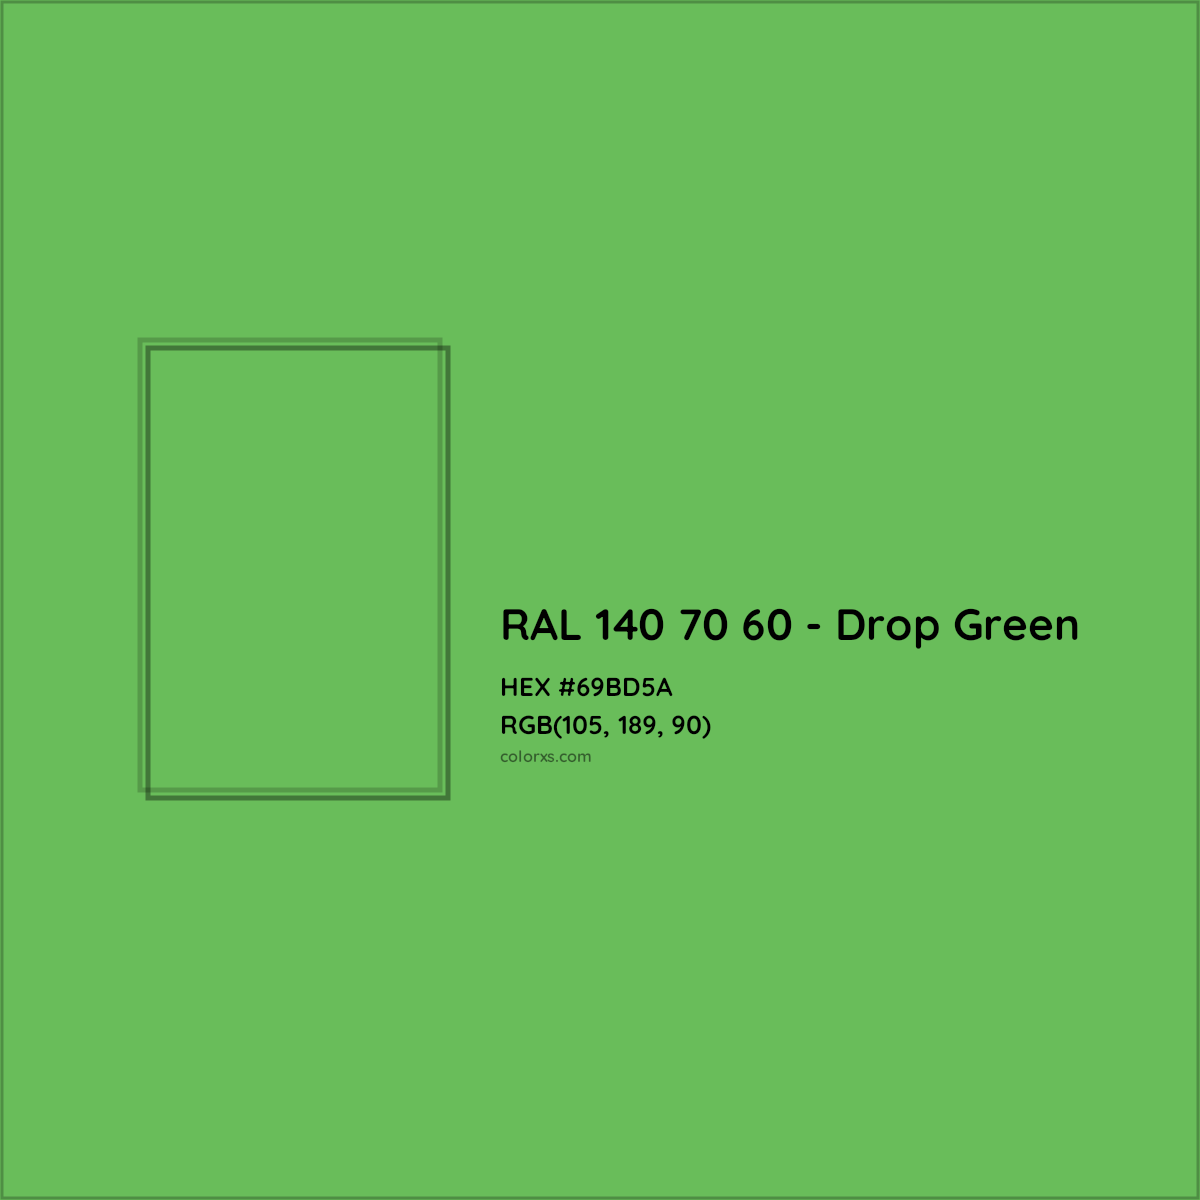 HEX #69BD5A RAL 140 70 60 - Drop Green CMS RAL Design - Color Code